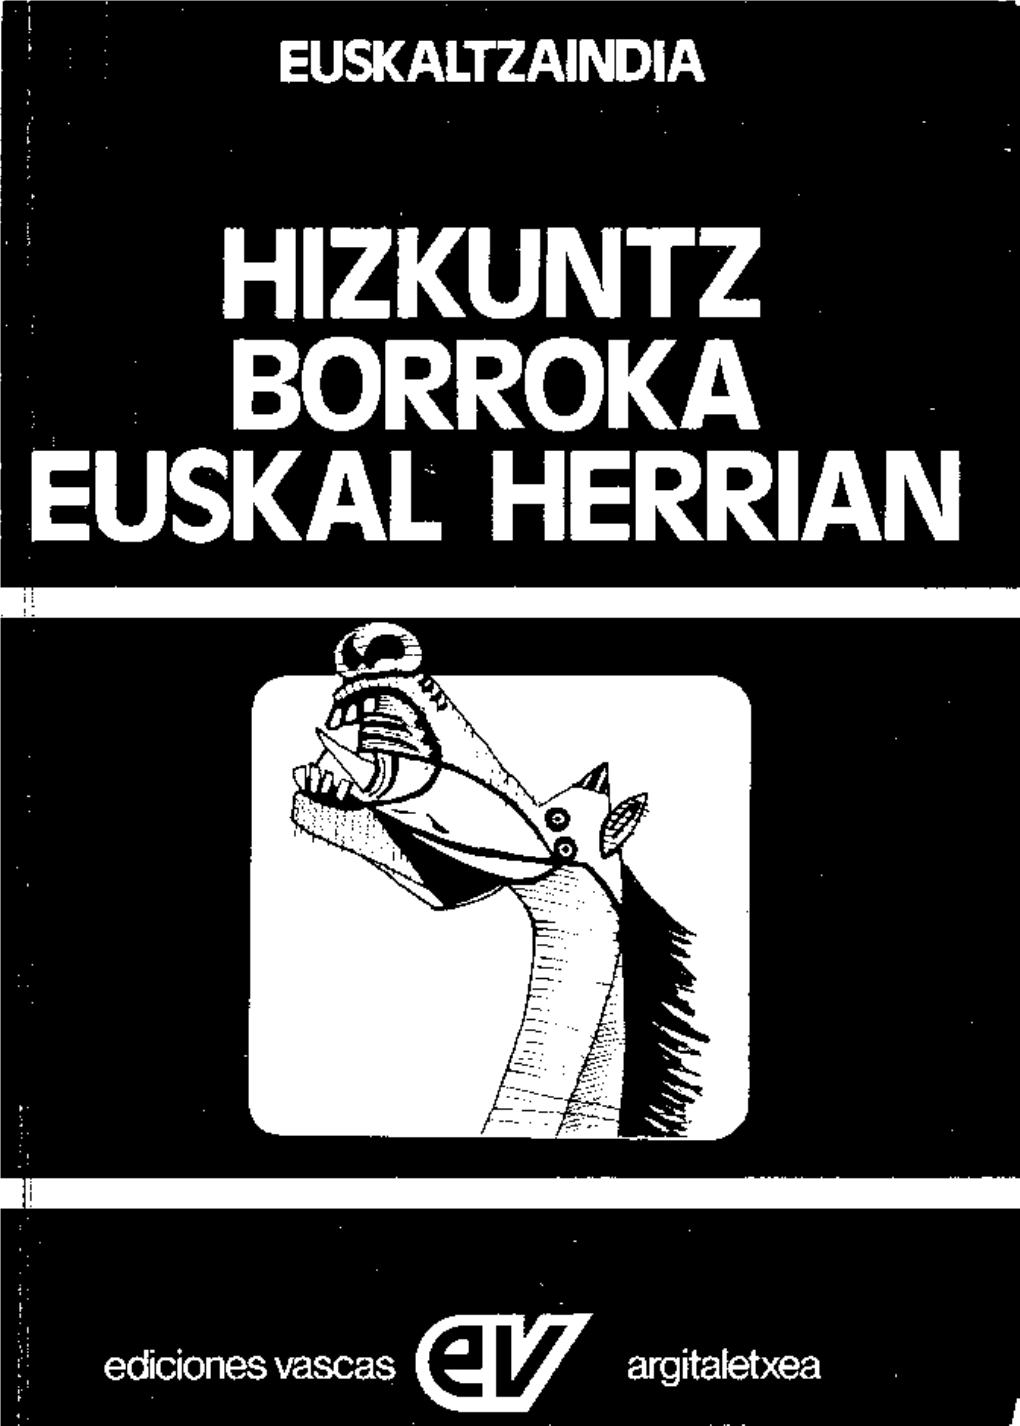 Hizkuntz Borroka Euskal Herrian